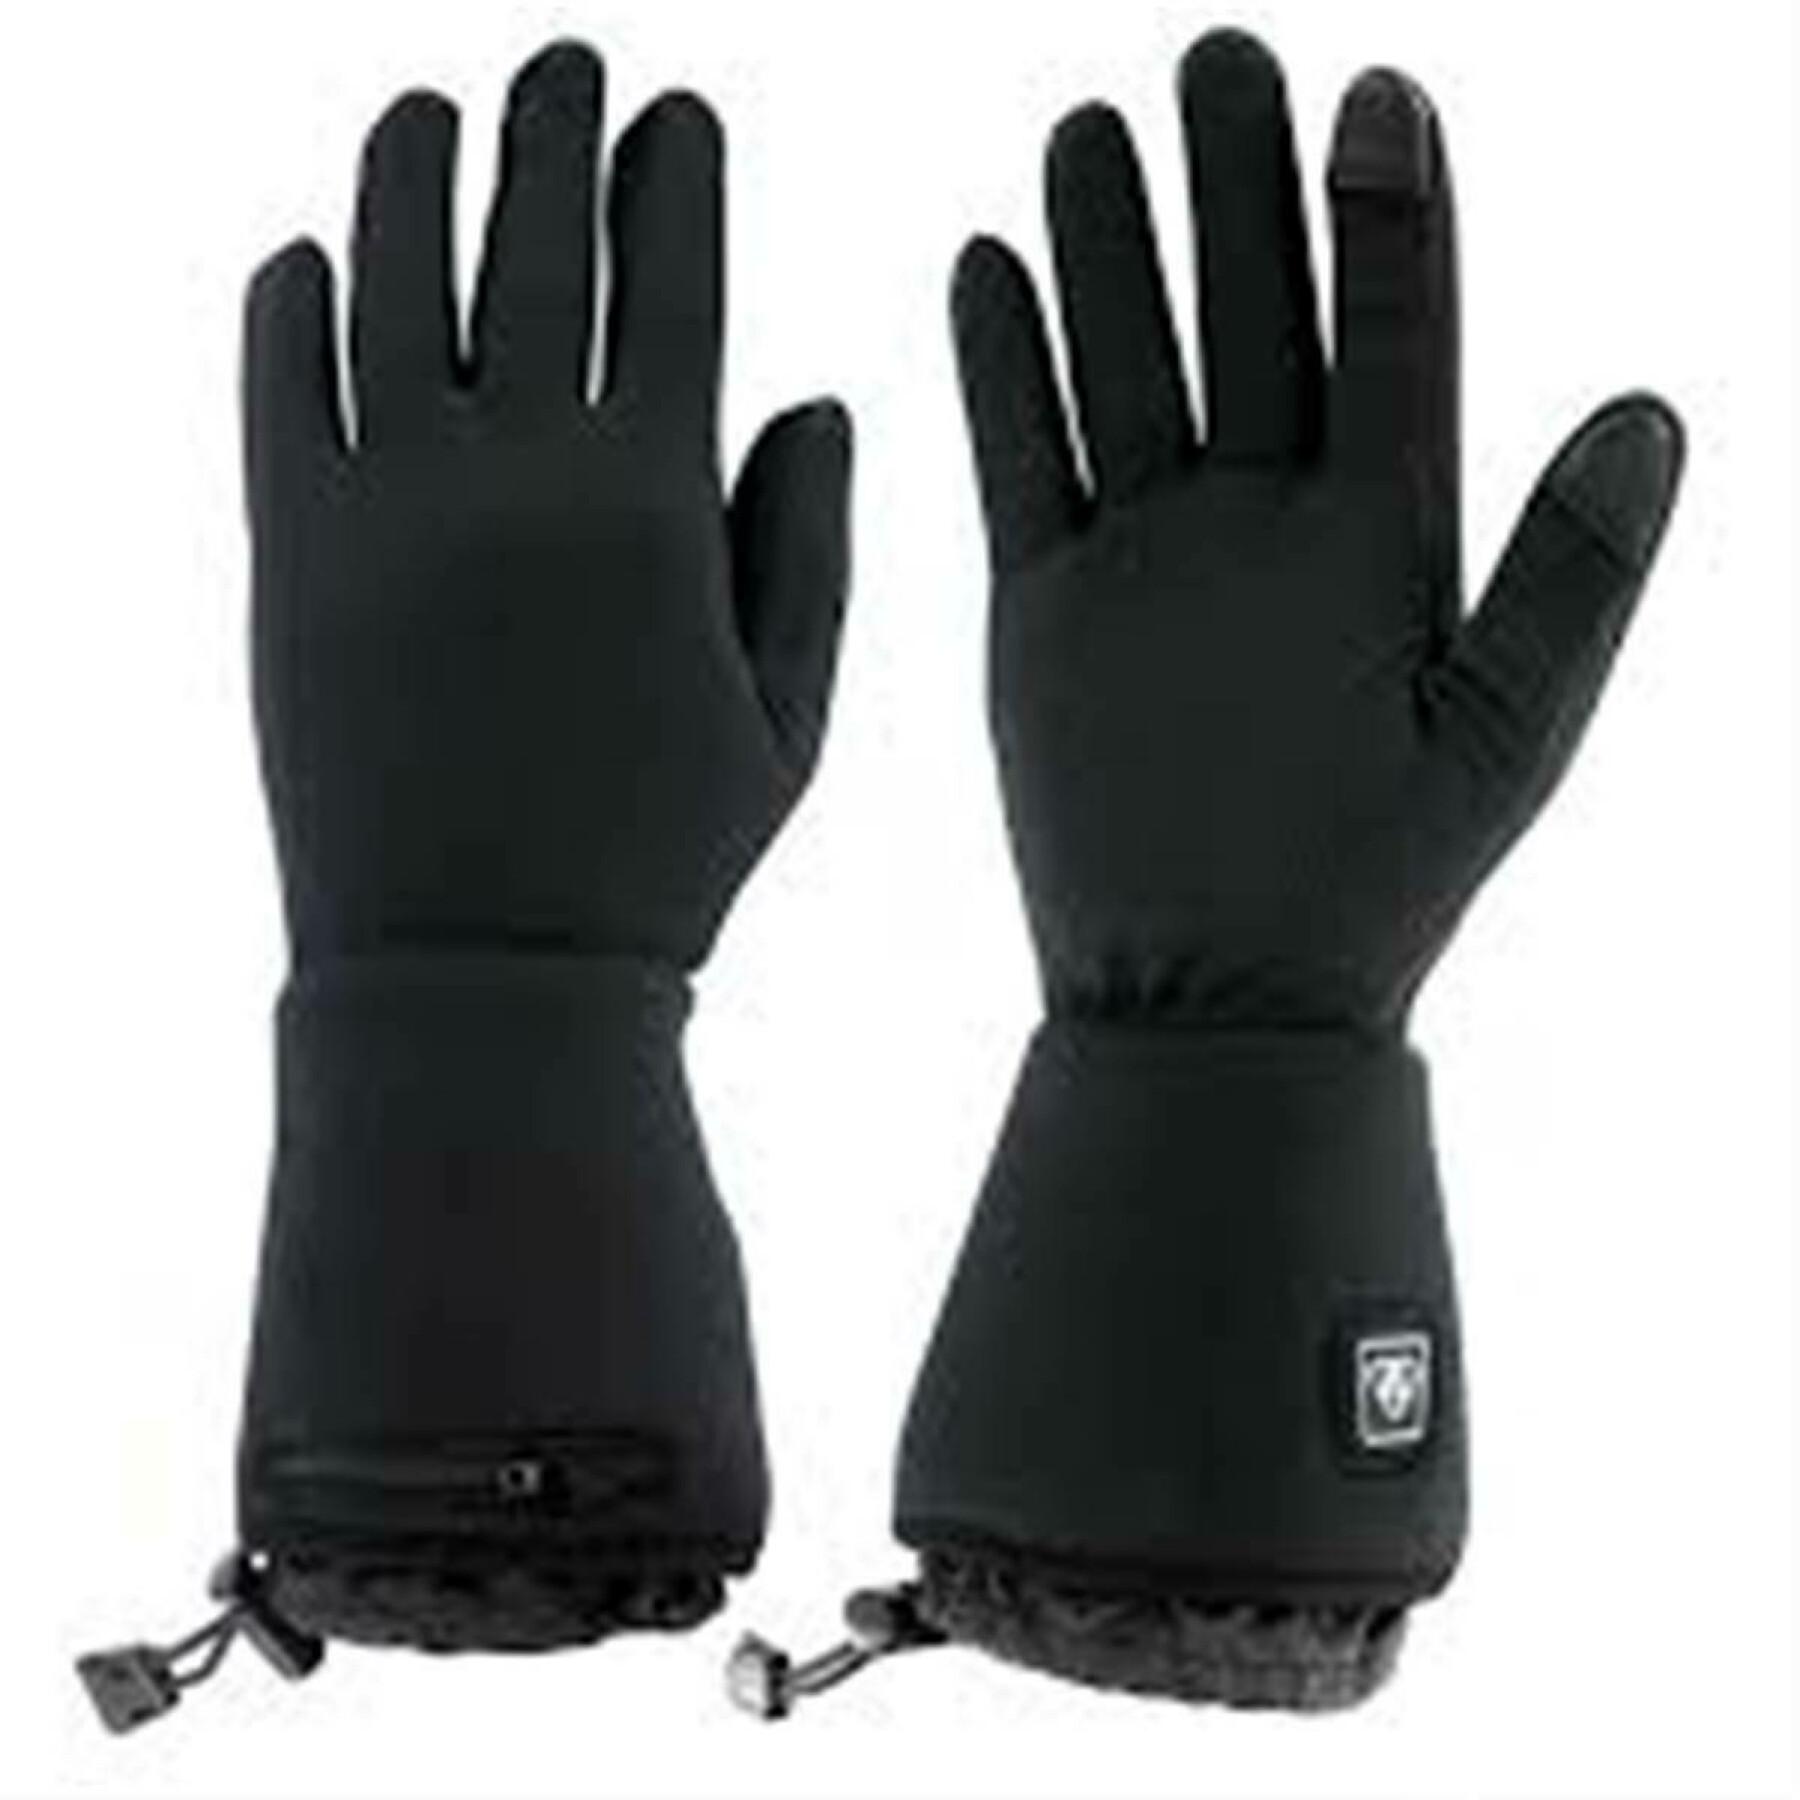 WANTALIS Gants Chauffants Sancy - Choisissez la température de vos gants.  Profitez d'une chaleur douce toute la journée